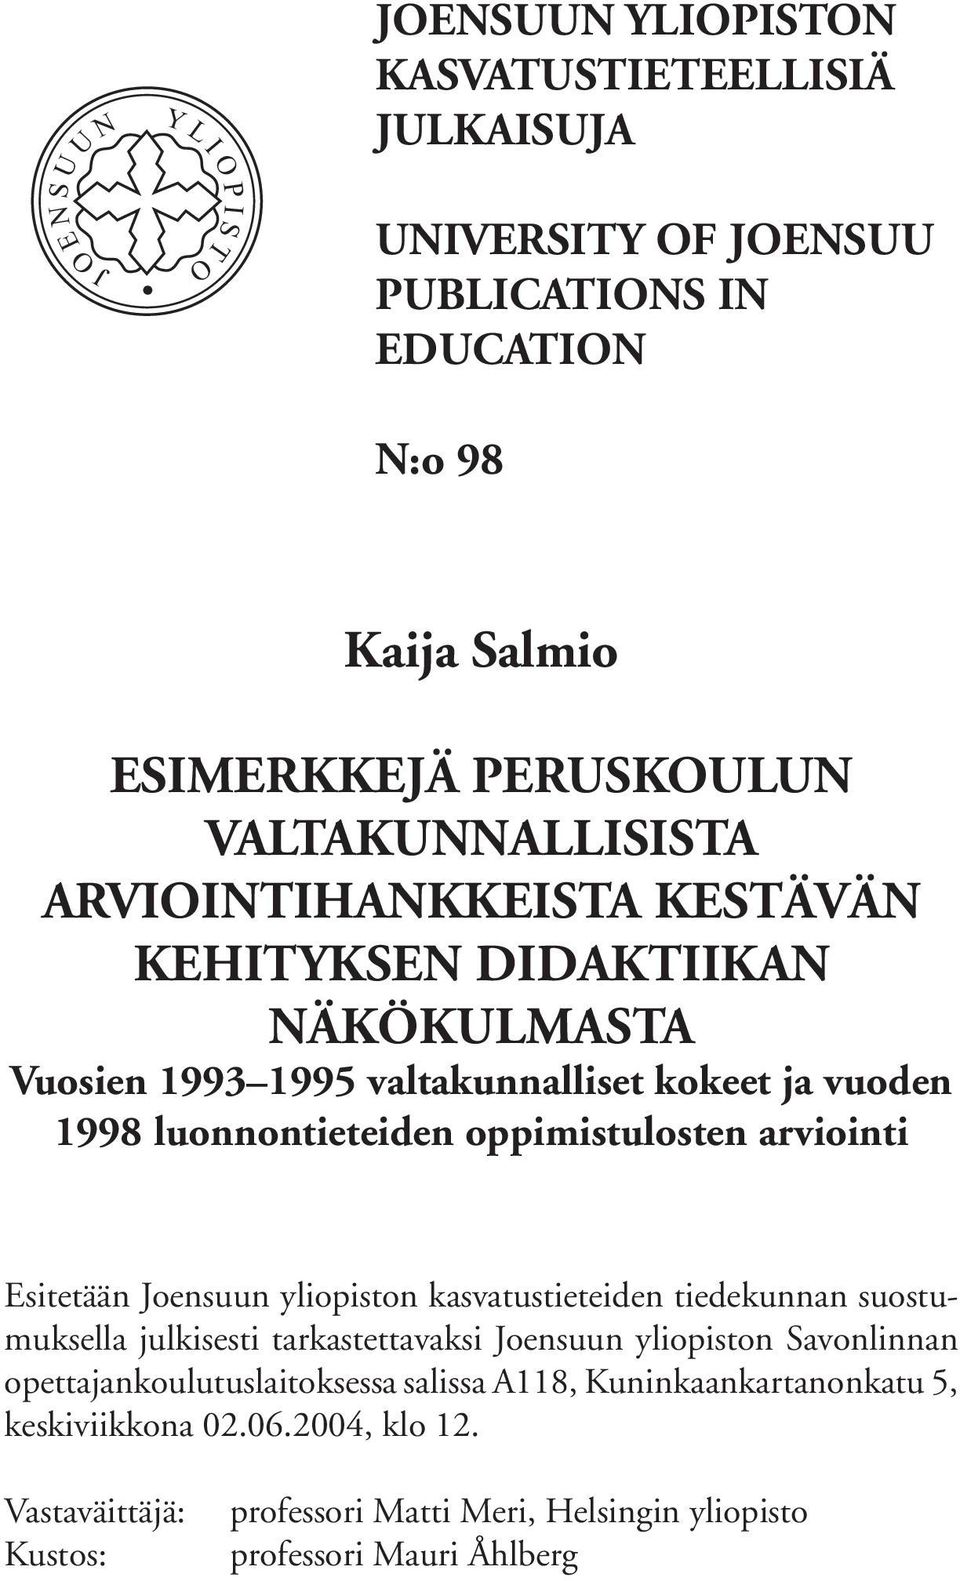 Esitetään Joensuun yliopiston kasvatustieteiden tiedekunnan suostumuksella julkisesti tarkastettavaksi Joensuun yliopiston Savonlinnan opettajankoulutuslaitoksessa